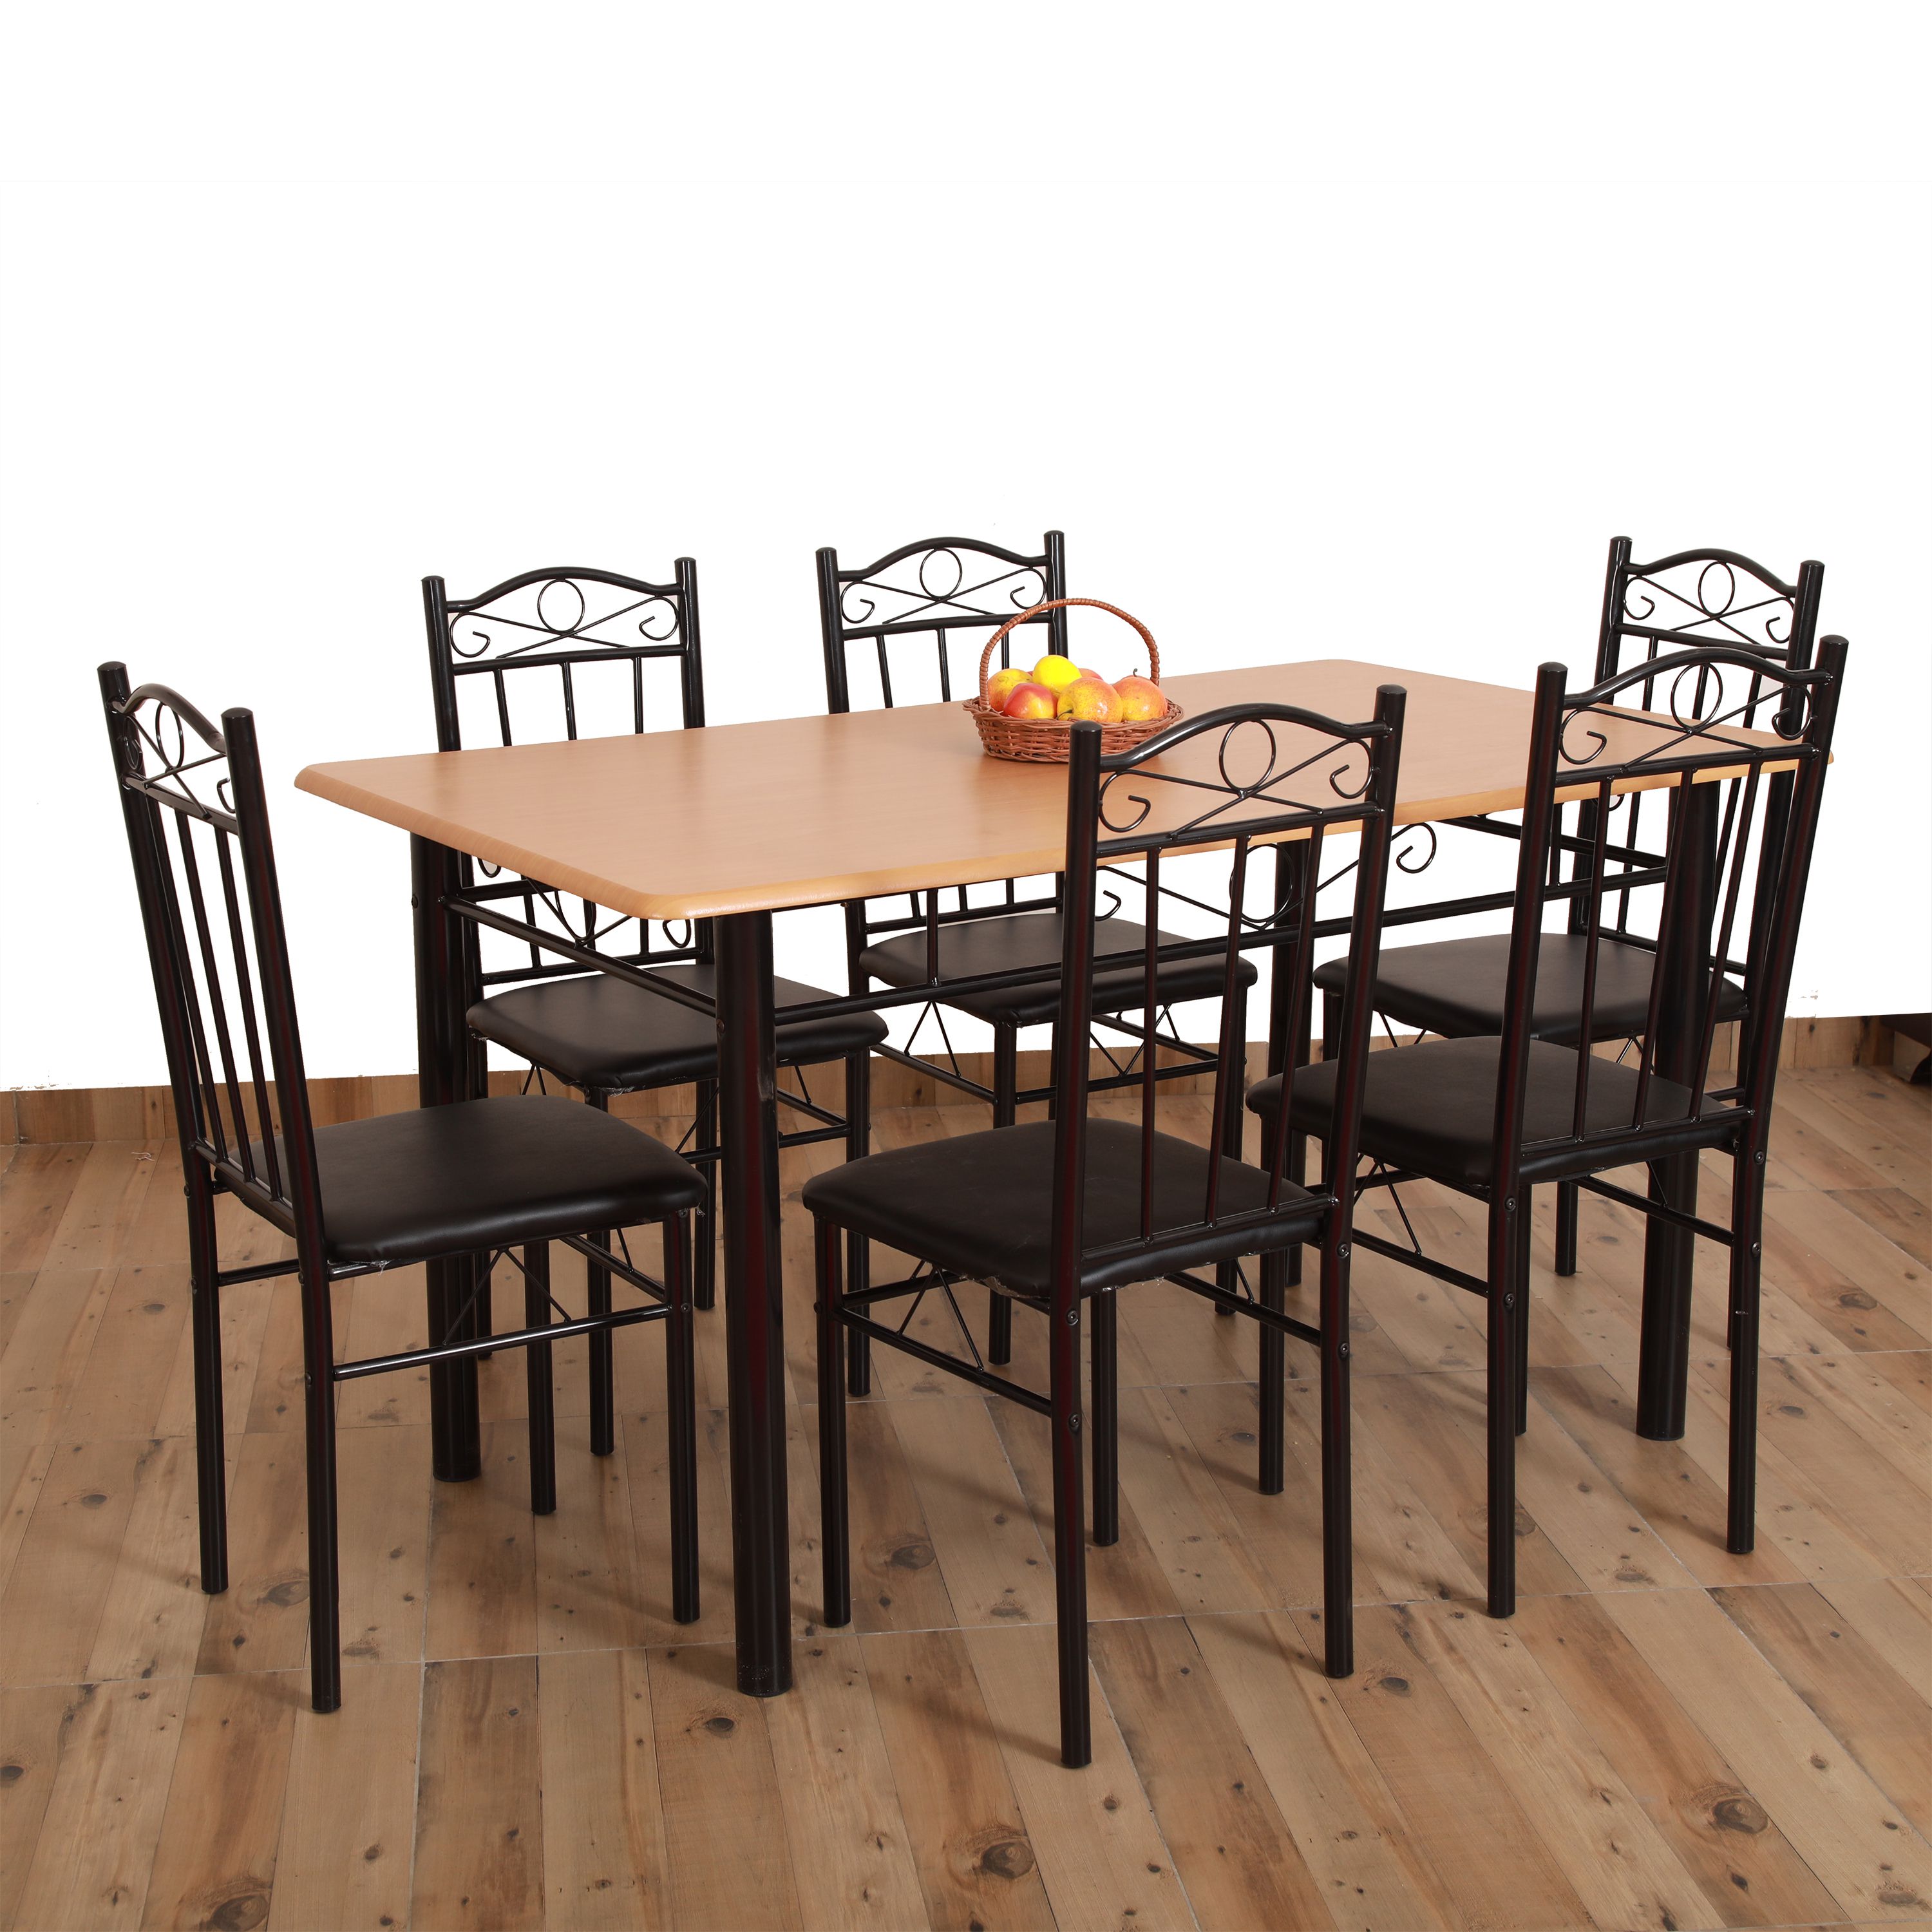 Eros 6 Seater Metal Plus Wooden Dining Table - Buy Eros 6 Seater Metal